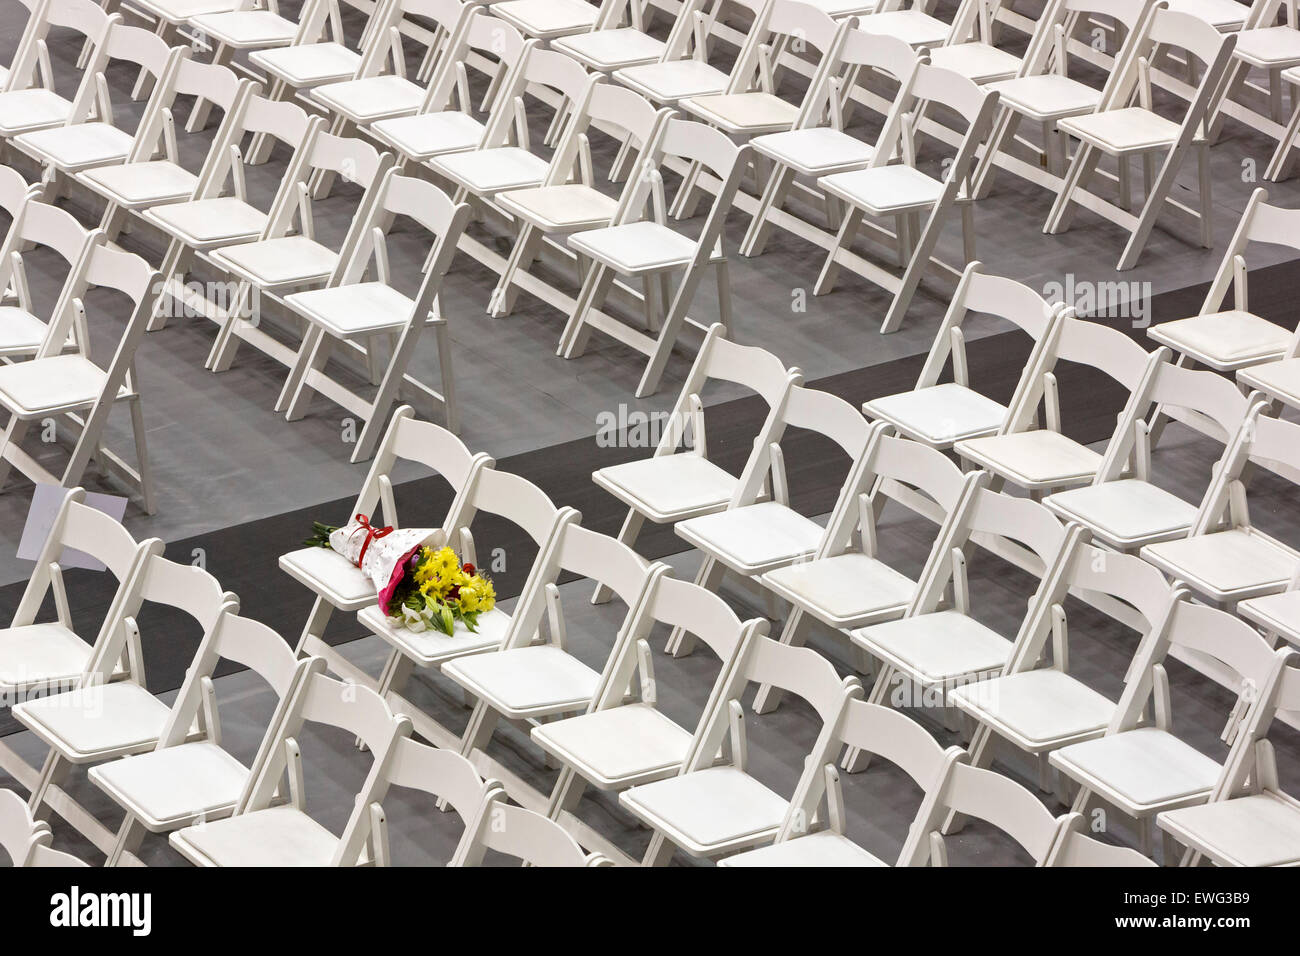 Detroit, Michigan - un mazzo di fiori si appoggia su una sedia davanti a una cerimonia di laurea presso la University of Detroit misericordia. Foto Stock